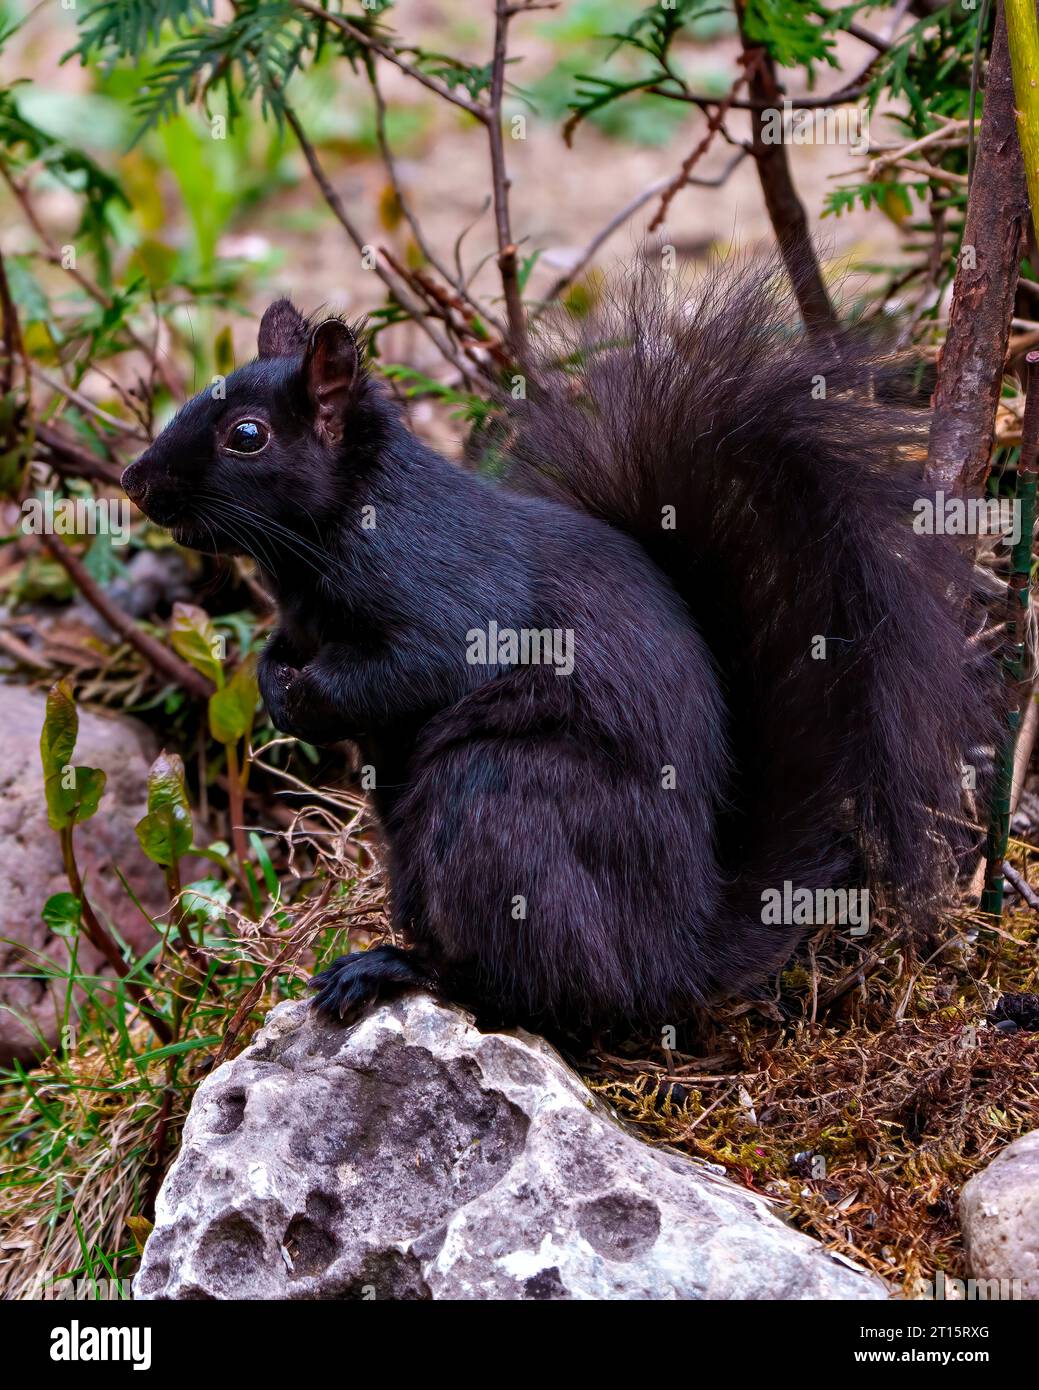 Eichhörnchen aus der Nähe Seitenansicht auf dem Boden mit Felsen und Moos und einem Waldhintergrund mit schwarzem Fell, Pfoten, buschigem Schwanz, Auge, Ohren. Stockfoto